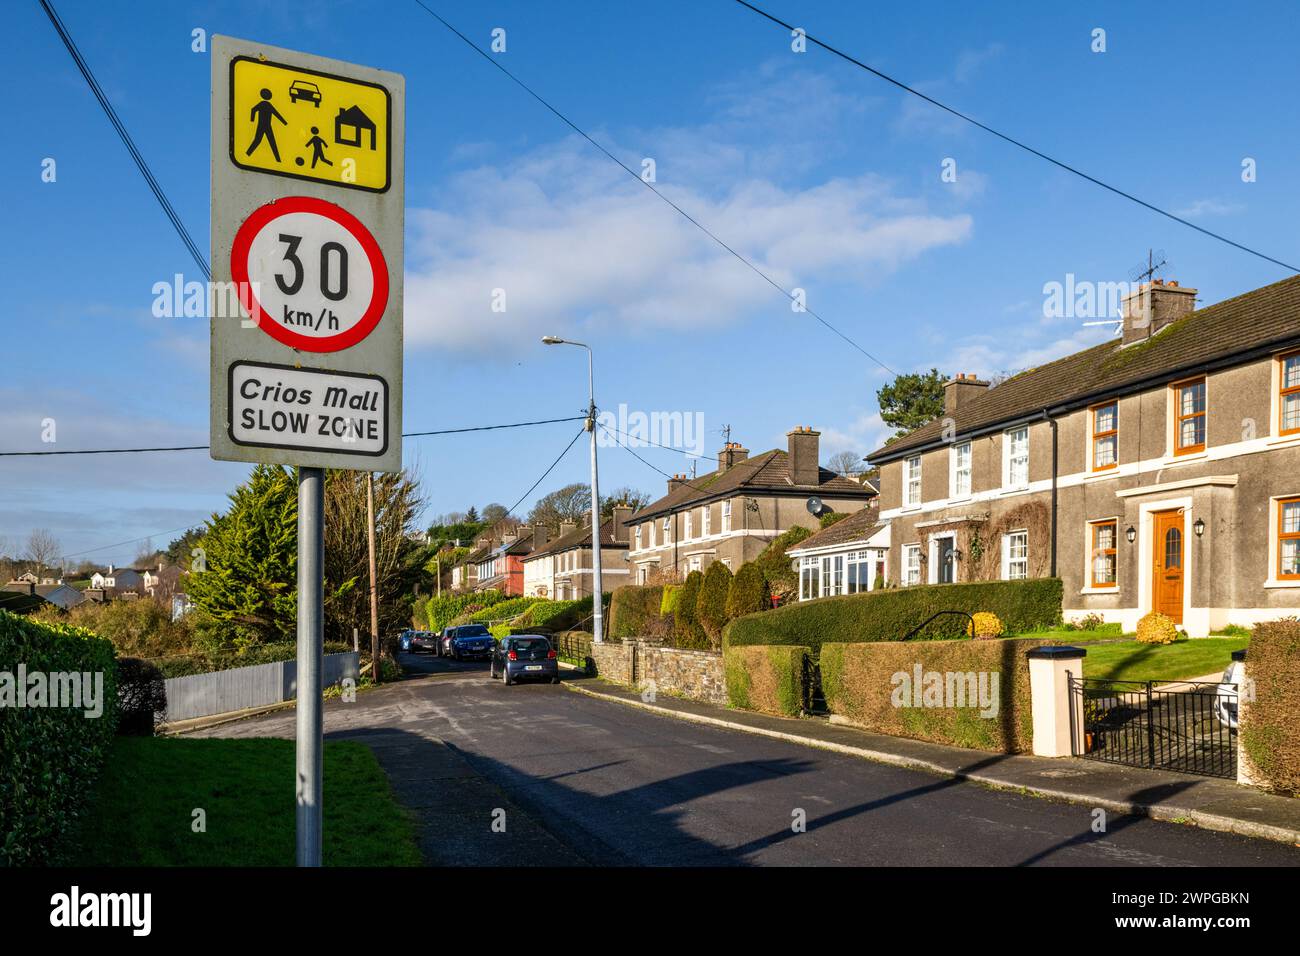 30 km/h 'Slow Zone'/Crios Mall Straßenschild auf einem Wohngebiet, Irland. Stockfoto